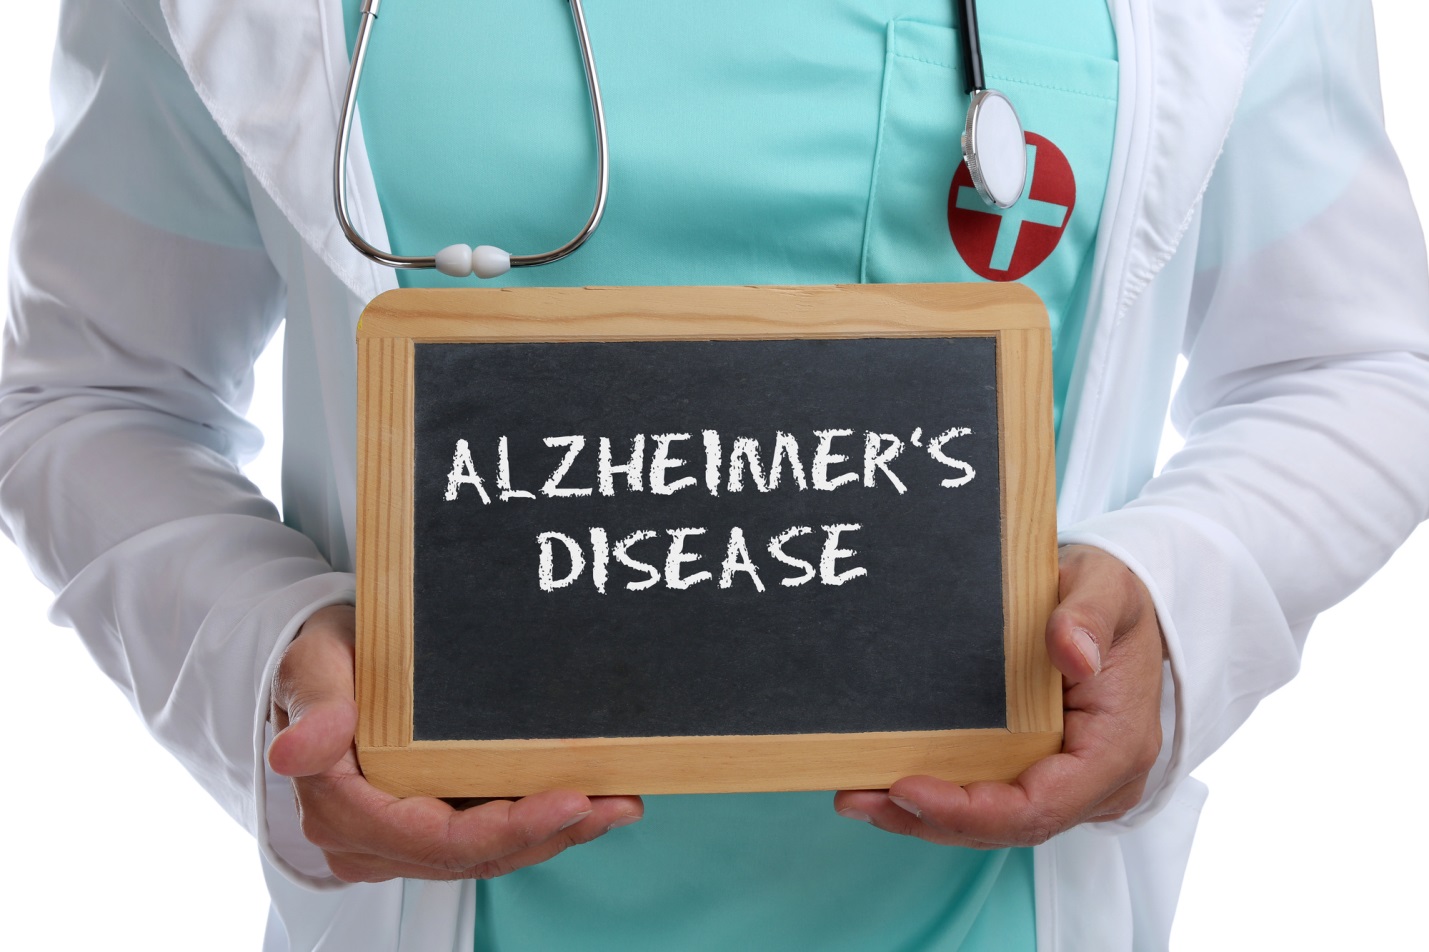 New Treatment for Alzheimer's